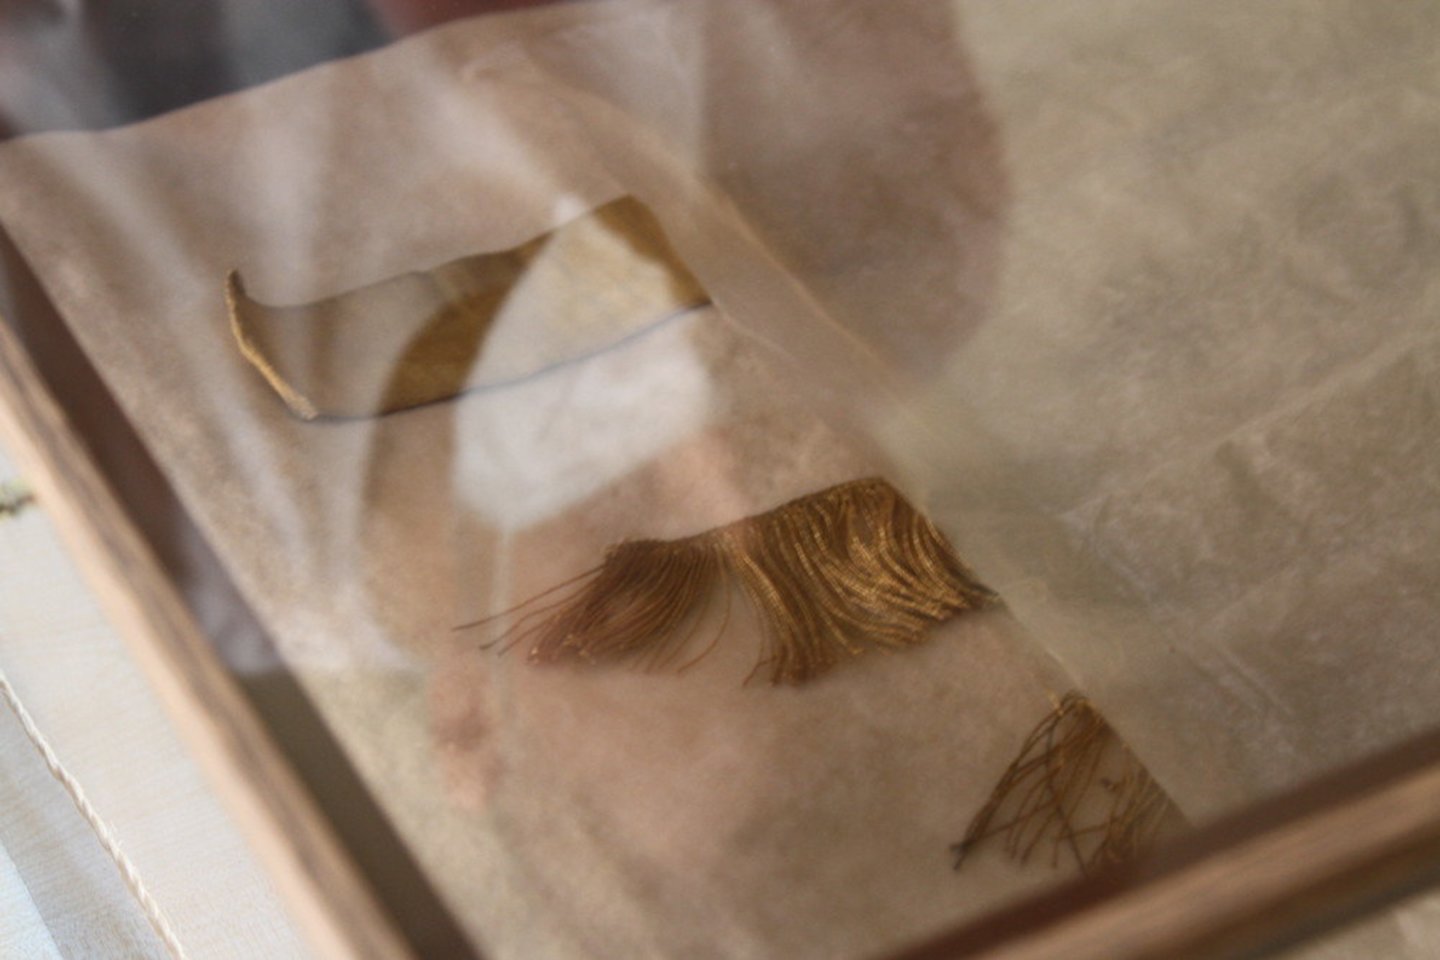 Tilmanas Kroekeris muziejui padovanojo išsaugotus dokumentus, nuotraukas ir karalienės Luizės suknelės skiautes.<br>L.Giedraitytės nuotr. 